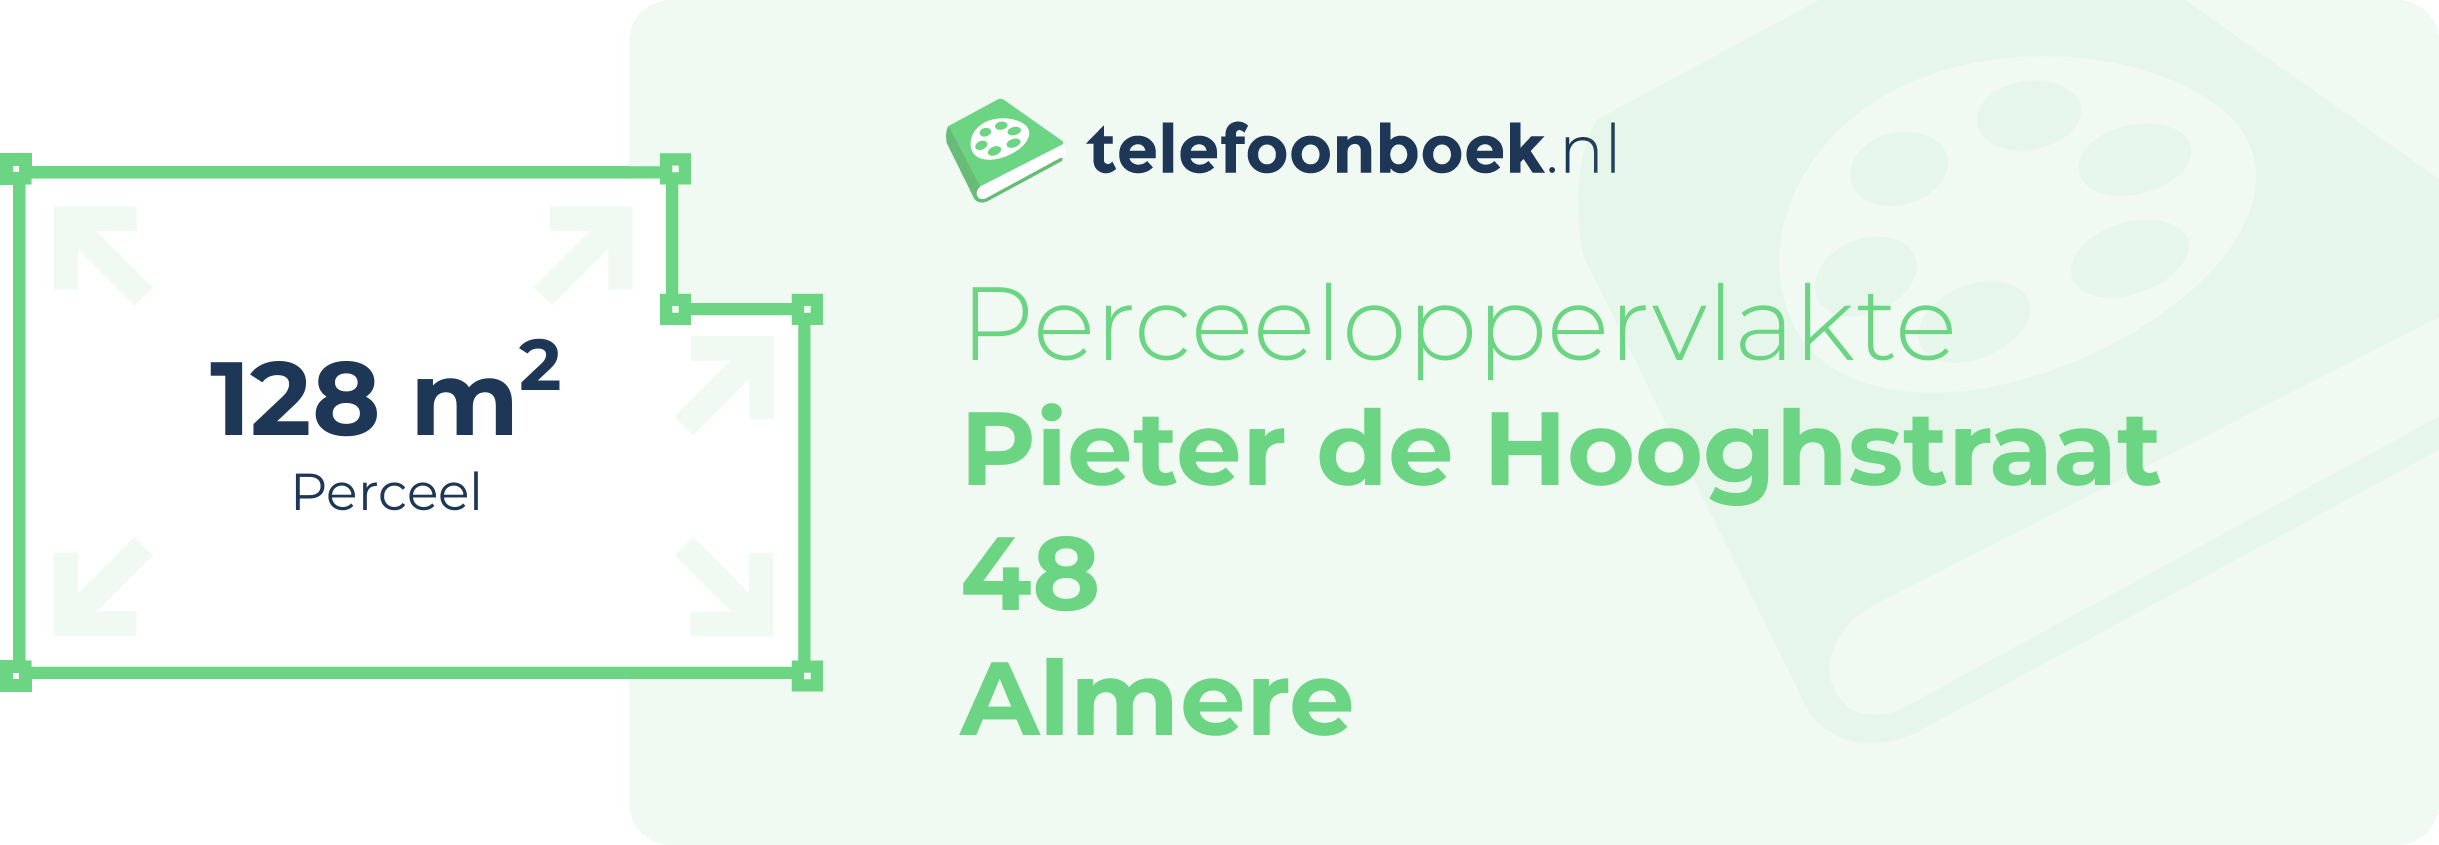 Perceeloppervlakte Pieter De Hooghstraat 48 Almere